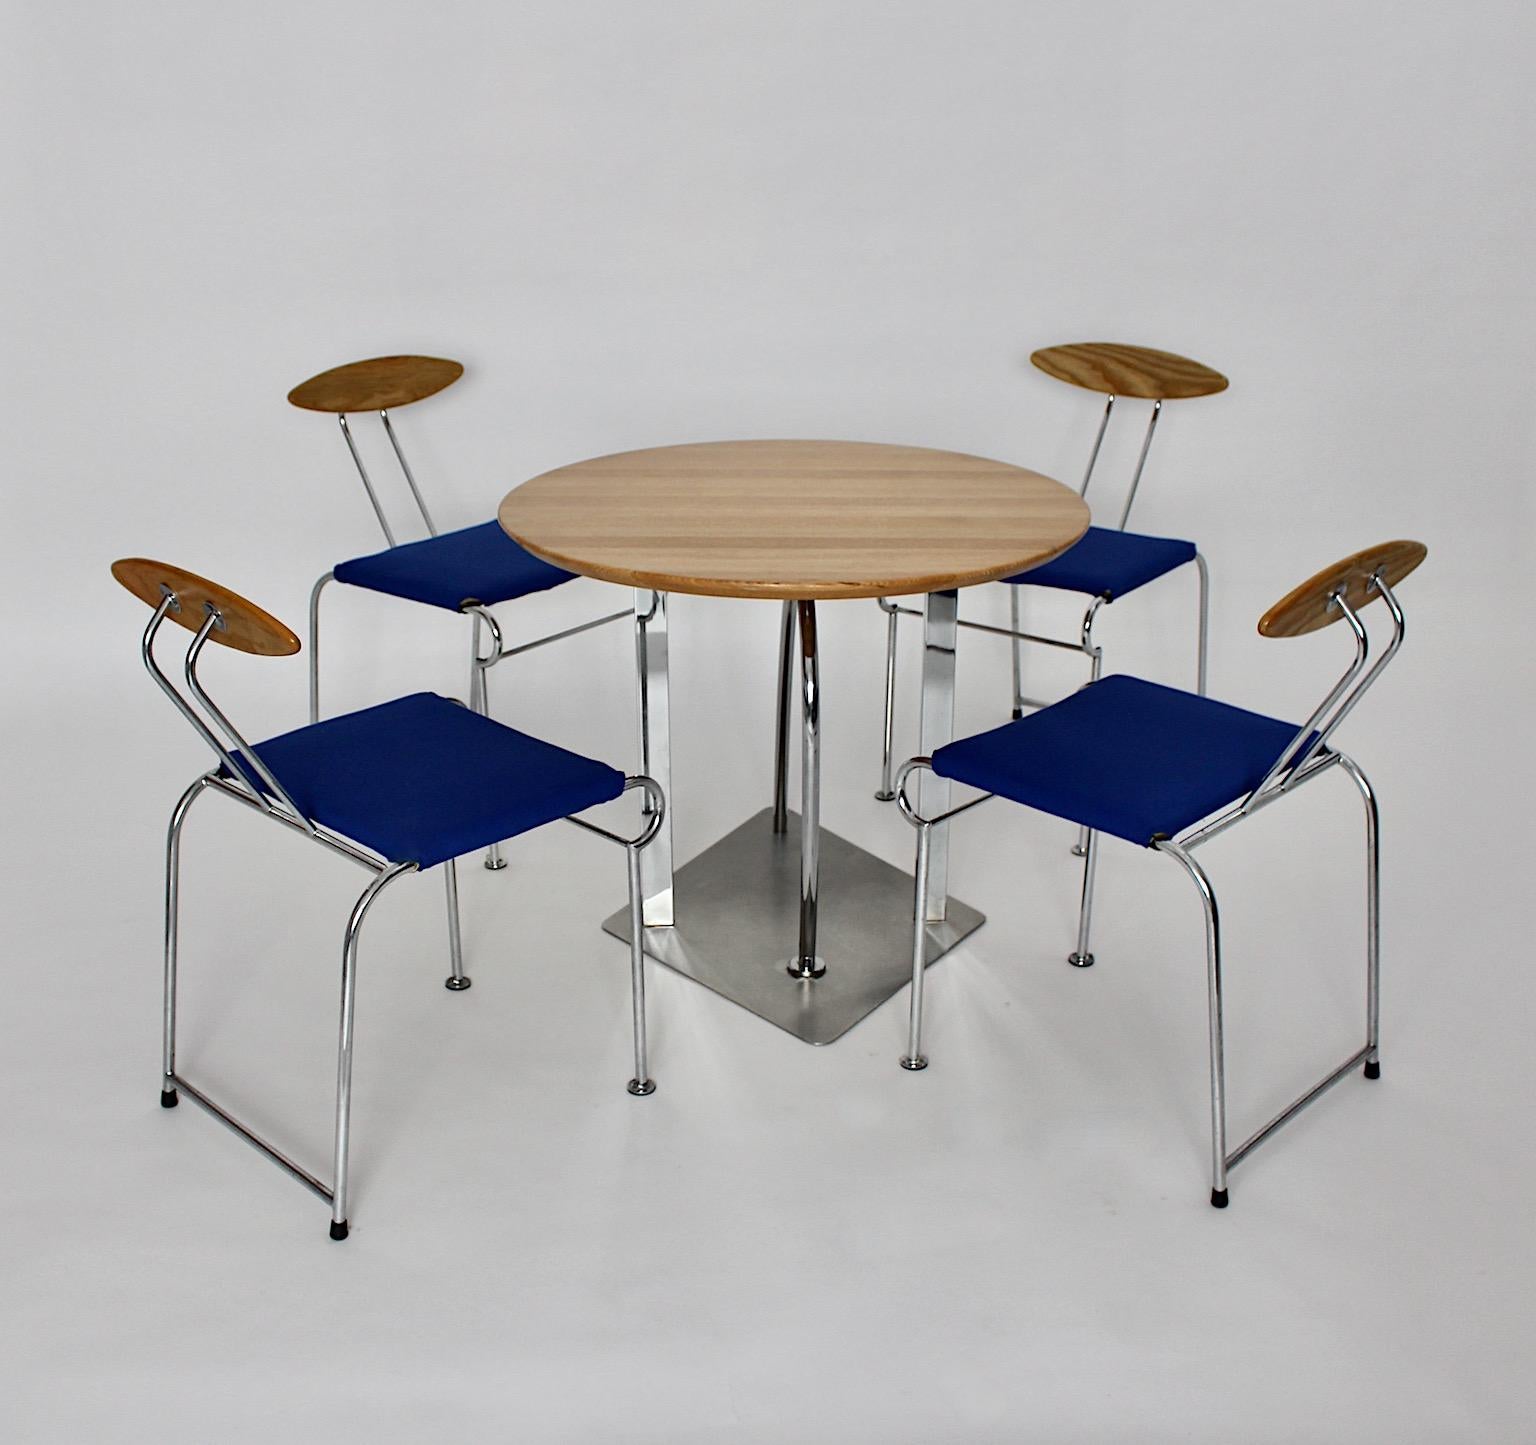 Ensemble de salle à manger vintage de style postmoderne Memphis conçu par Massimo Iosa Ghini pour Moroso vers 1987 en Italie à partir de frêne, de métal et de tissu textil bleu électrique.
Ce magnifique ensemble comprend une table de salle à manger